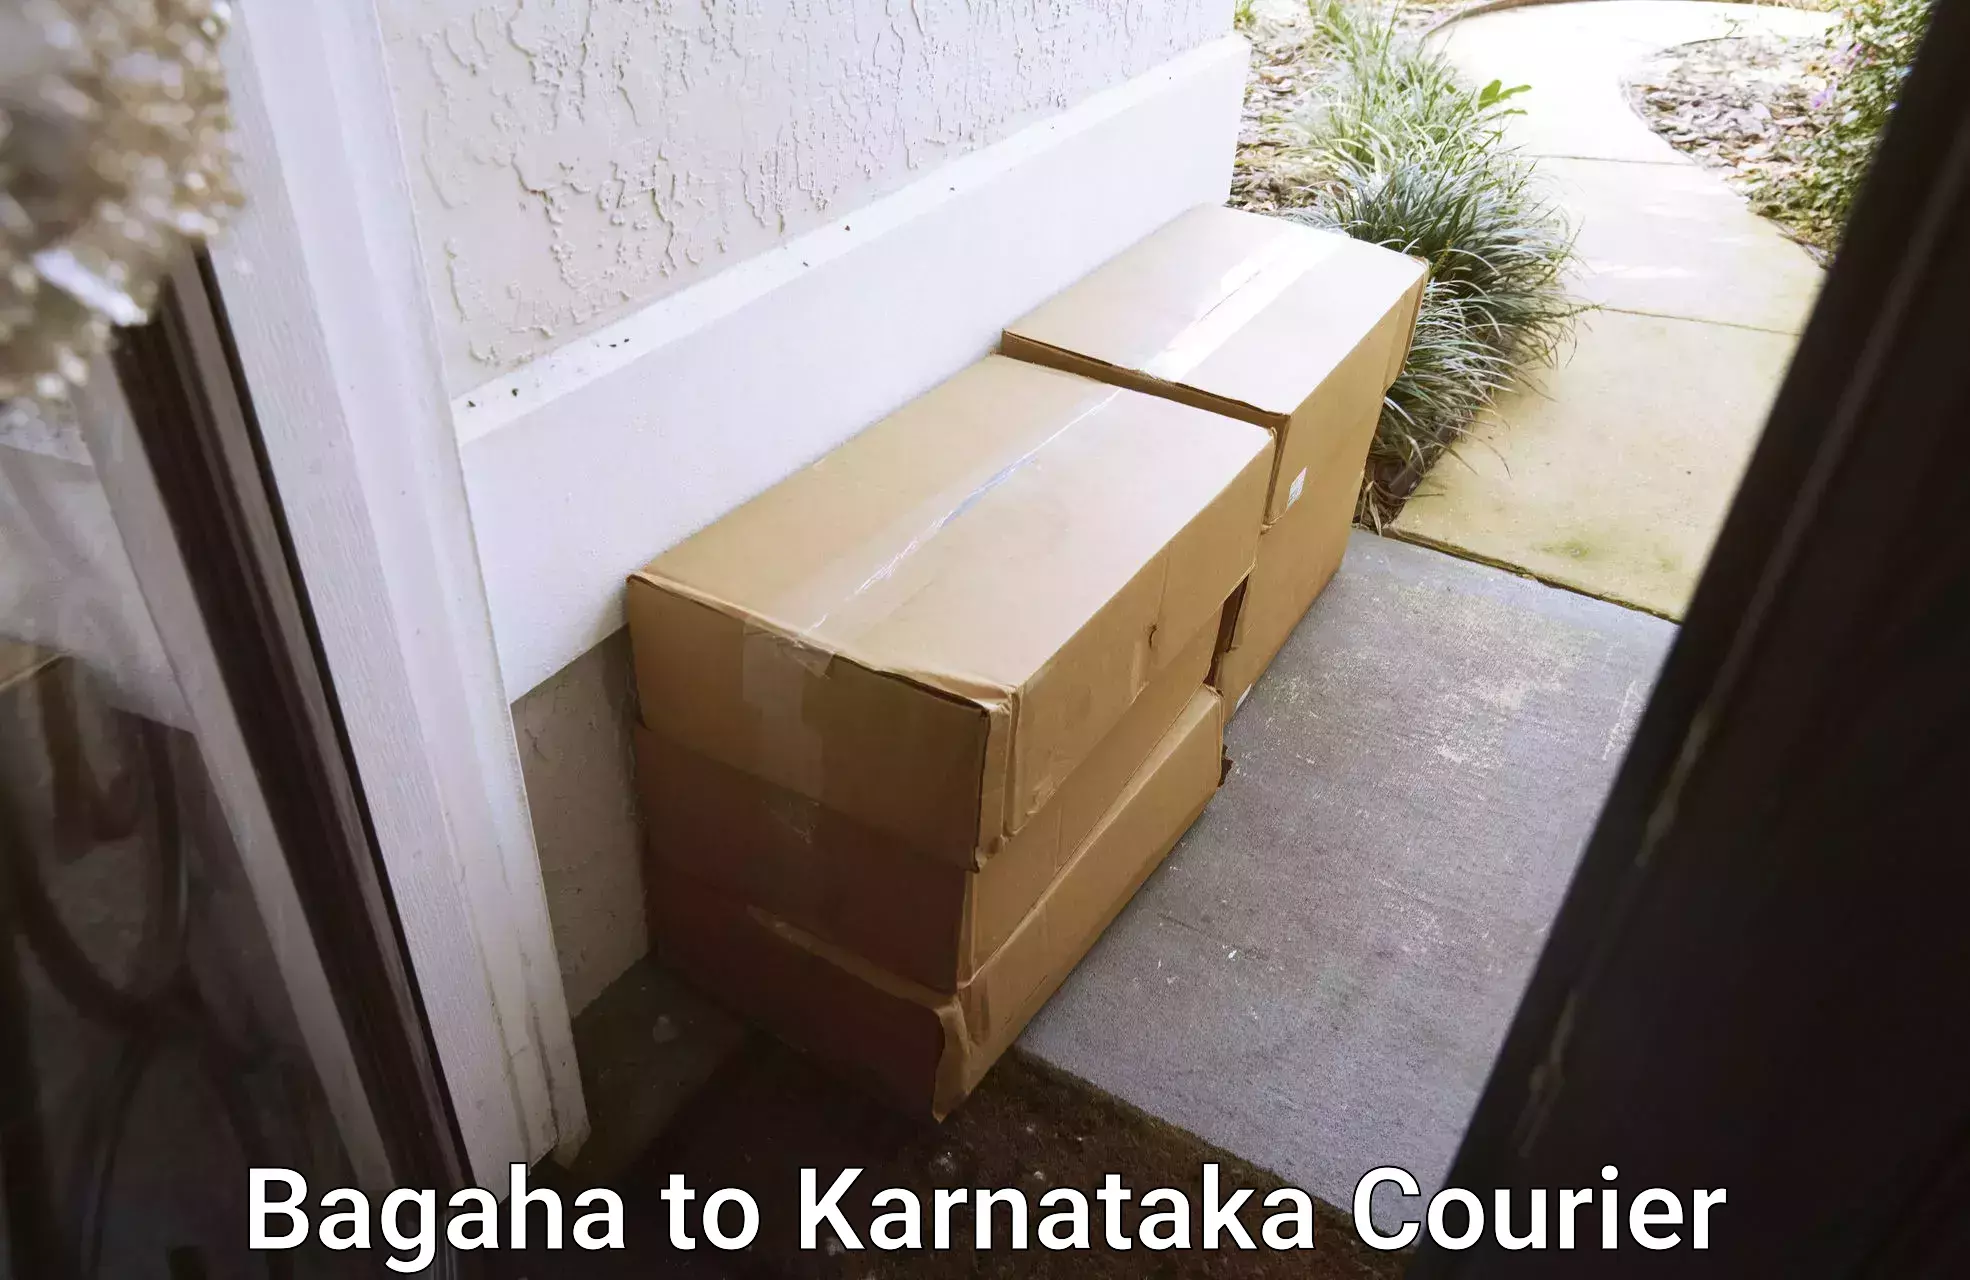 Local home movers Bagaha to Karnataka